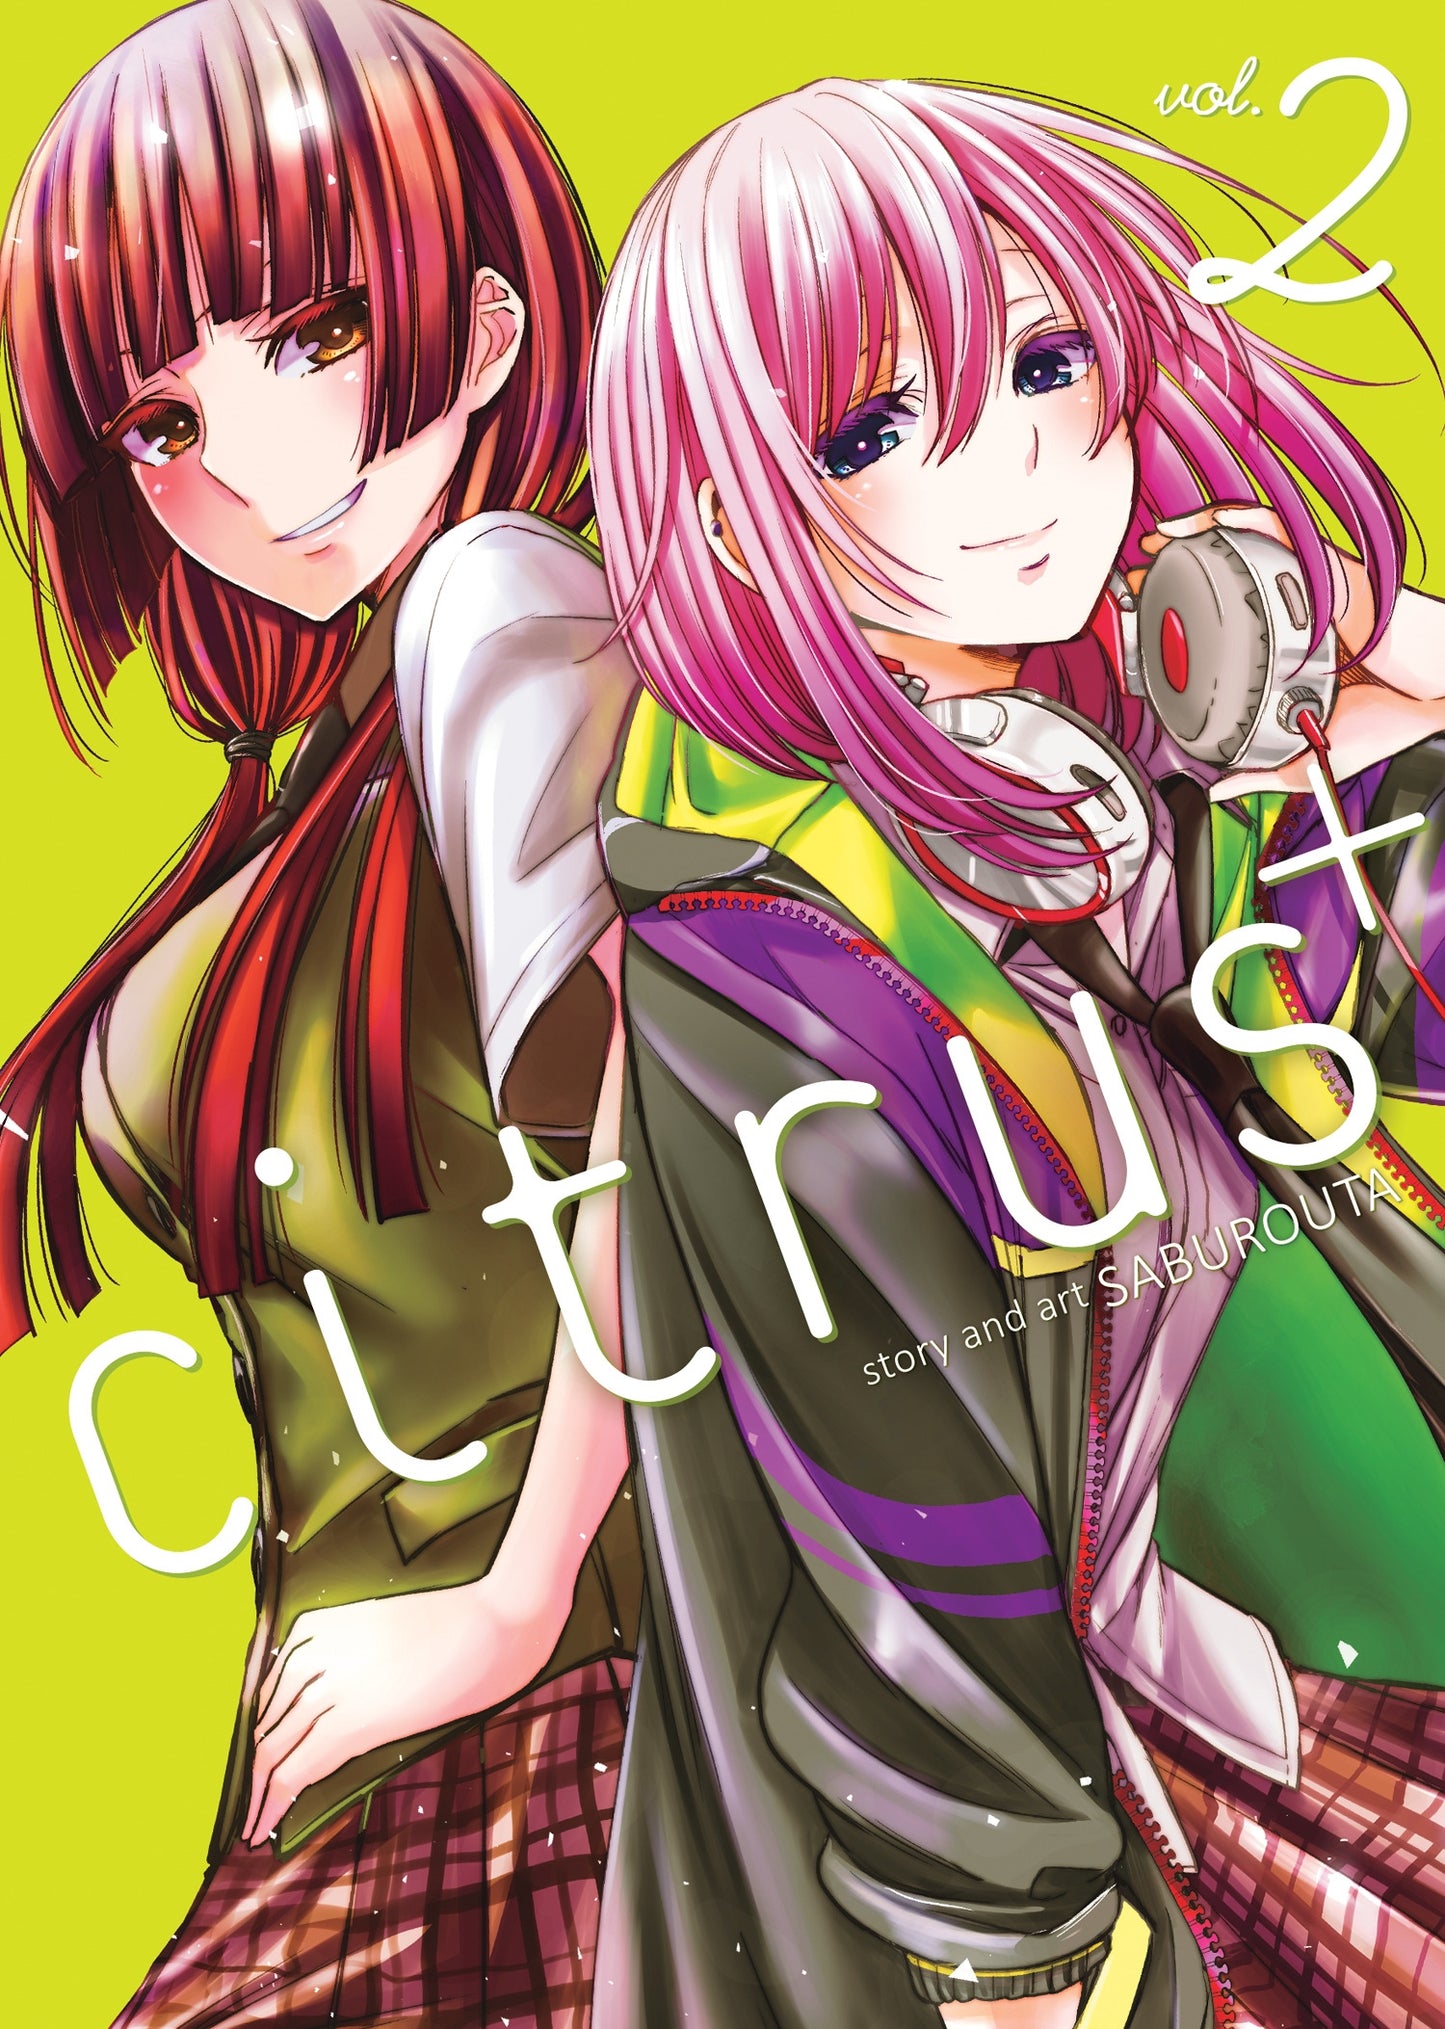 Citrus Plus Vol. 2 - Manga Warehouse